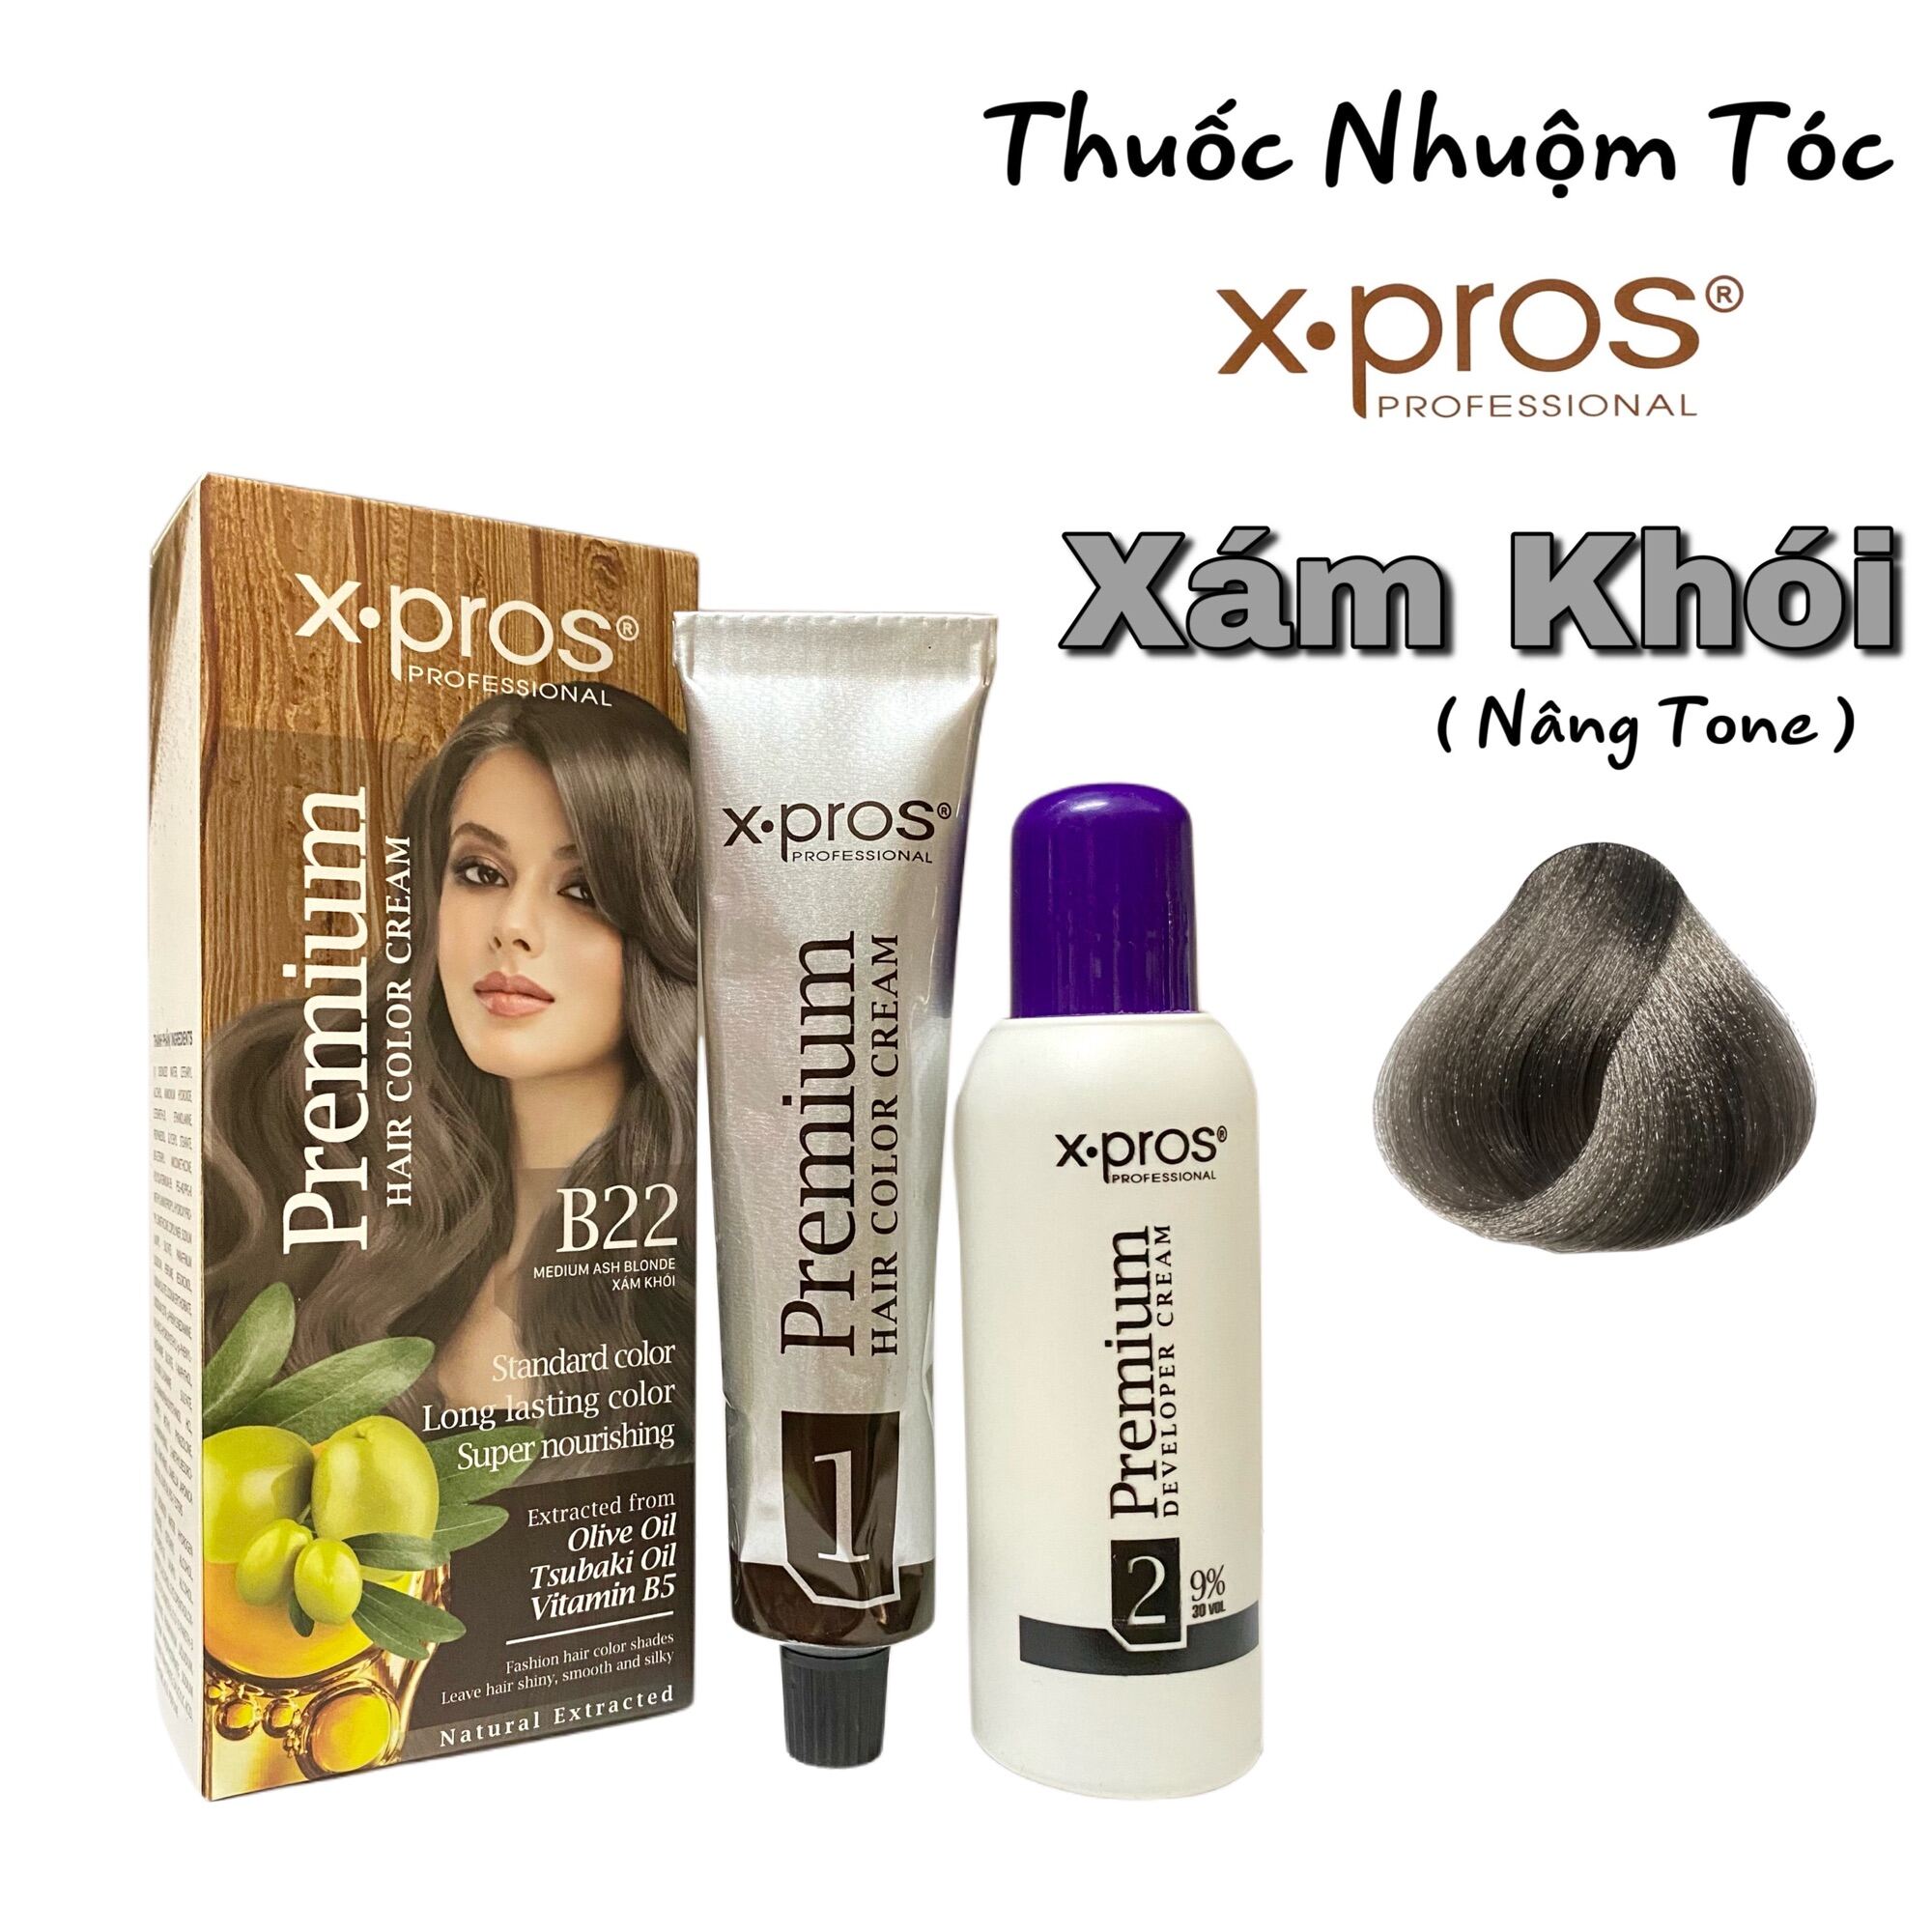 Thuốc nhuộm tóc X-PROS với màu sắc xám khói đang là xu hướng mới của các tín đồ làm đẹp. Với chiết xuất olive cùng với thành phần chăm sóc tóc cao cấp, X-PROS sẽ giúp cho mái tóc của bạn trở nên đẹp và khỏe mạnh hơn bao giờ hết.